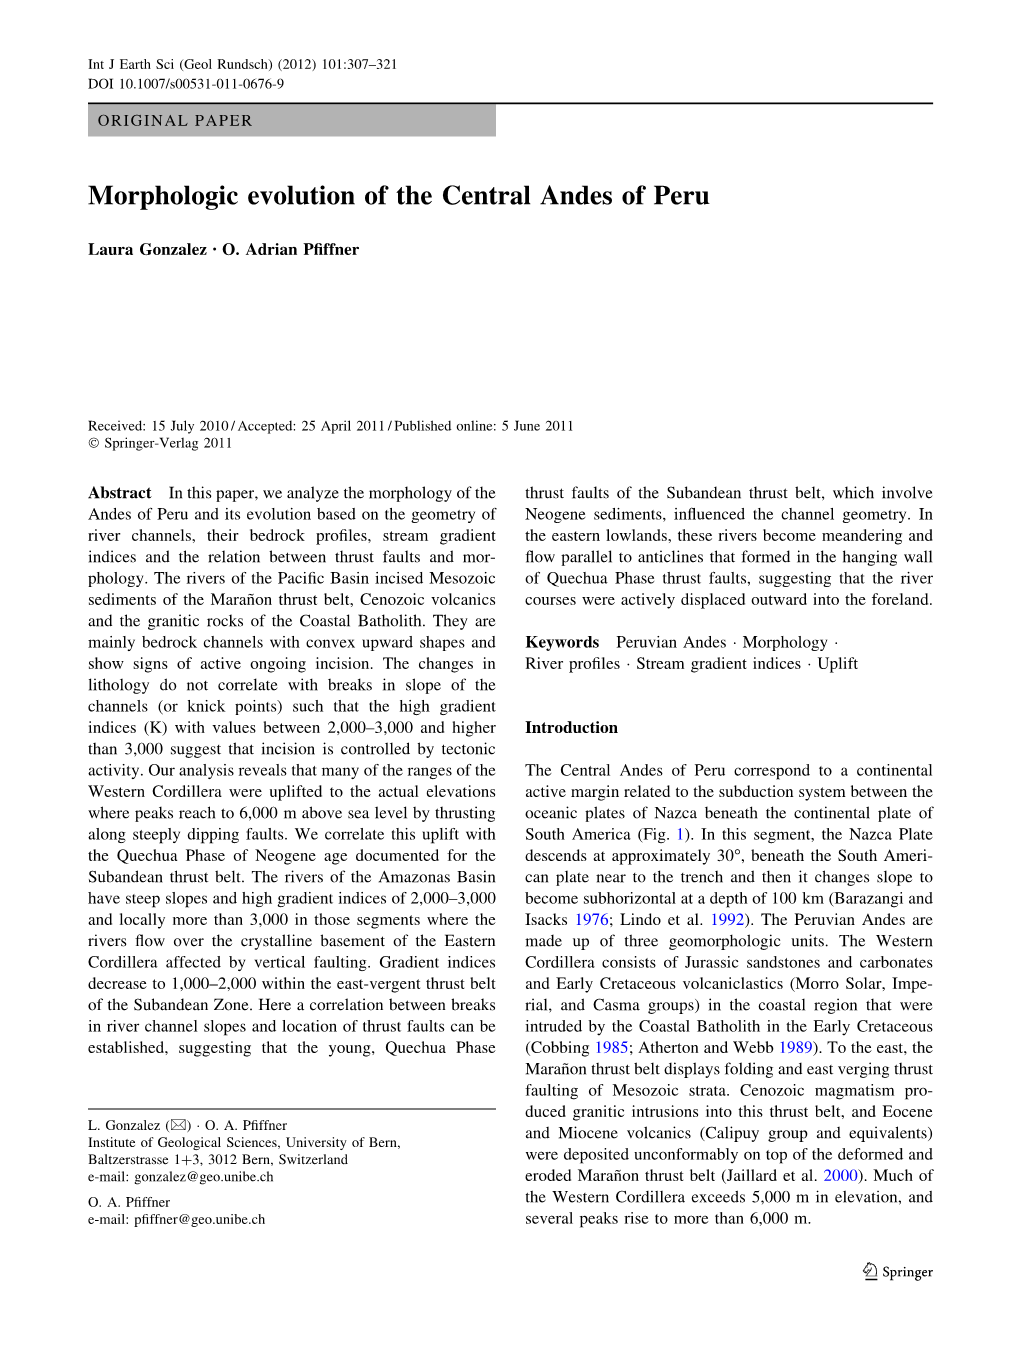 Morphologic Evolution of the Central Andes of Peru